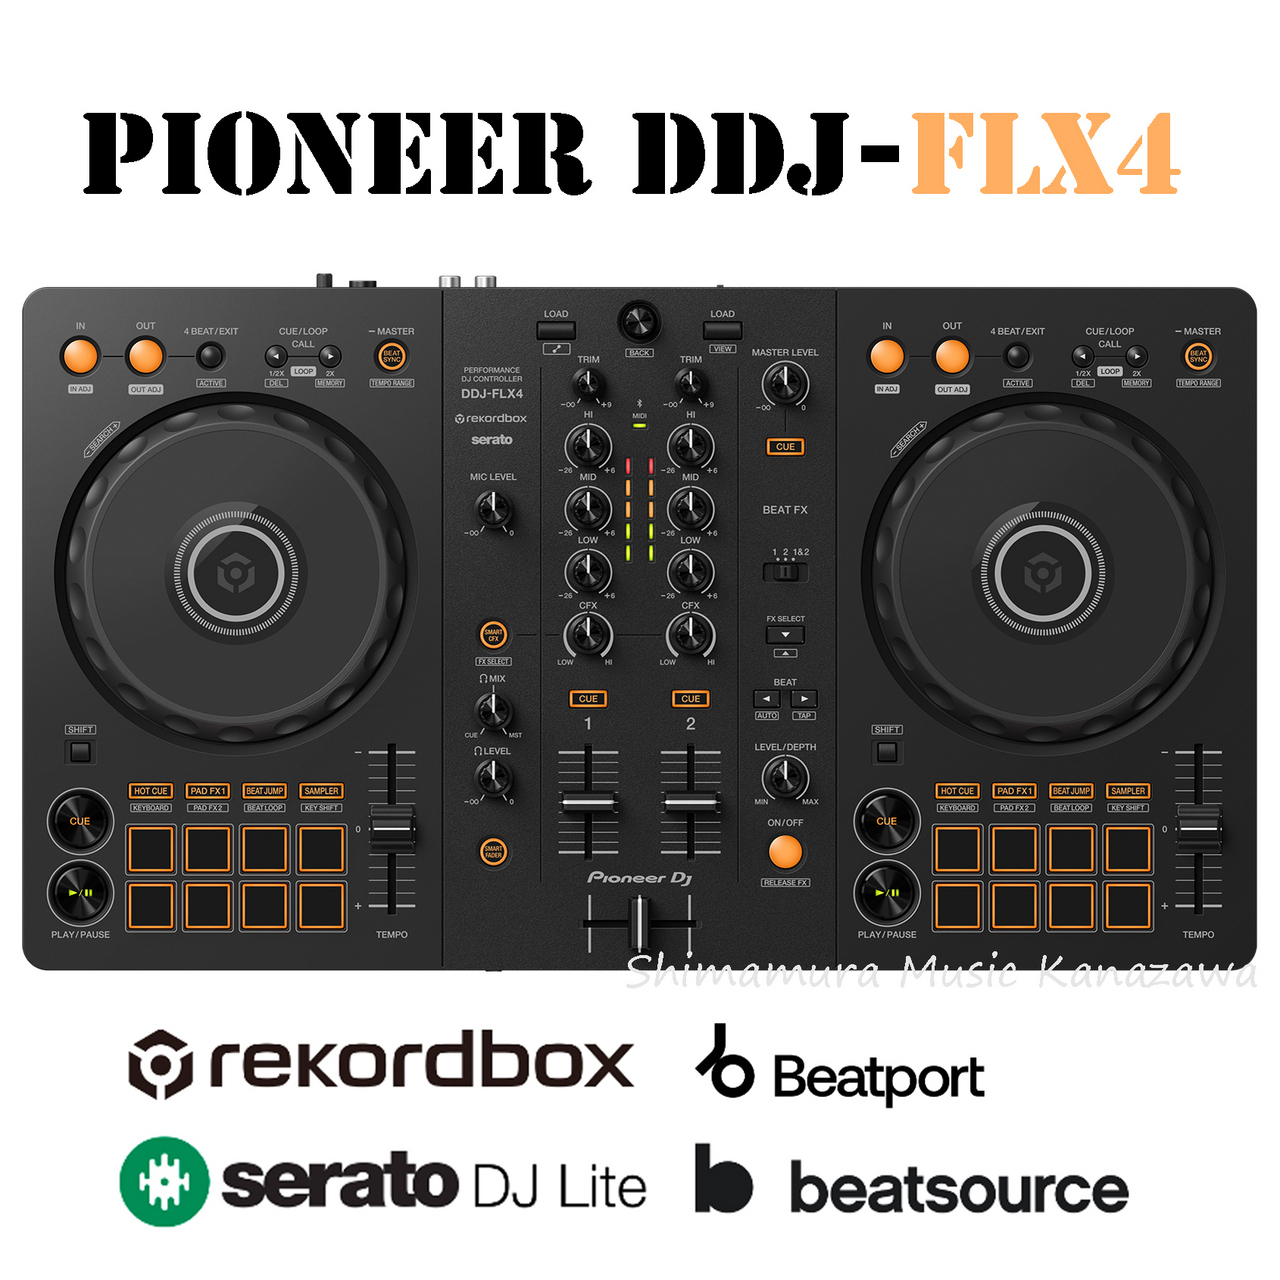 DDJ-FLX4 Pioneer DJ serato rekordbox